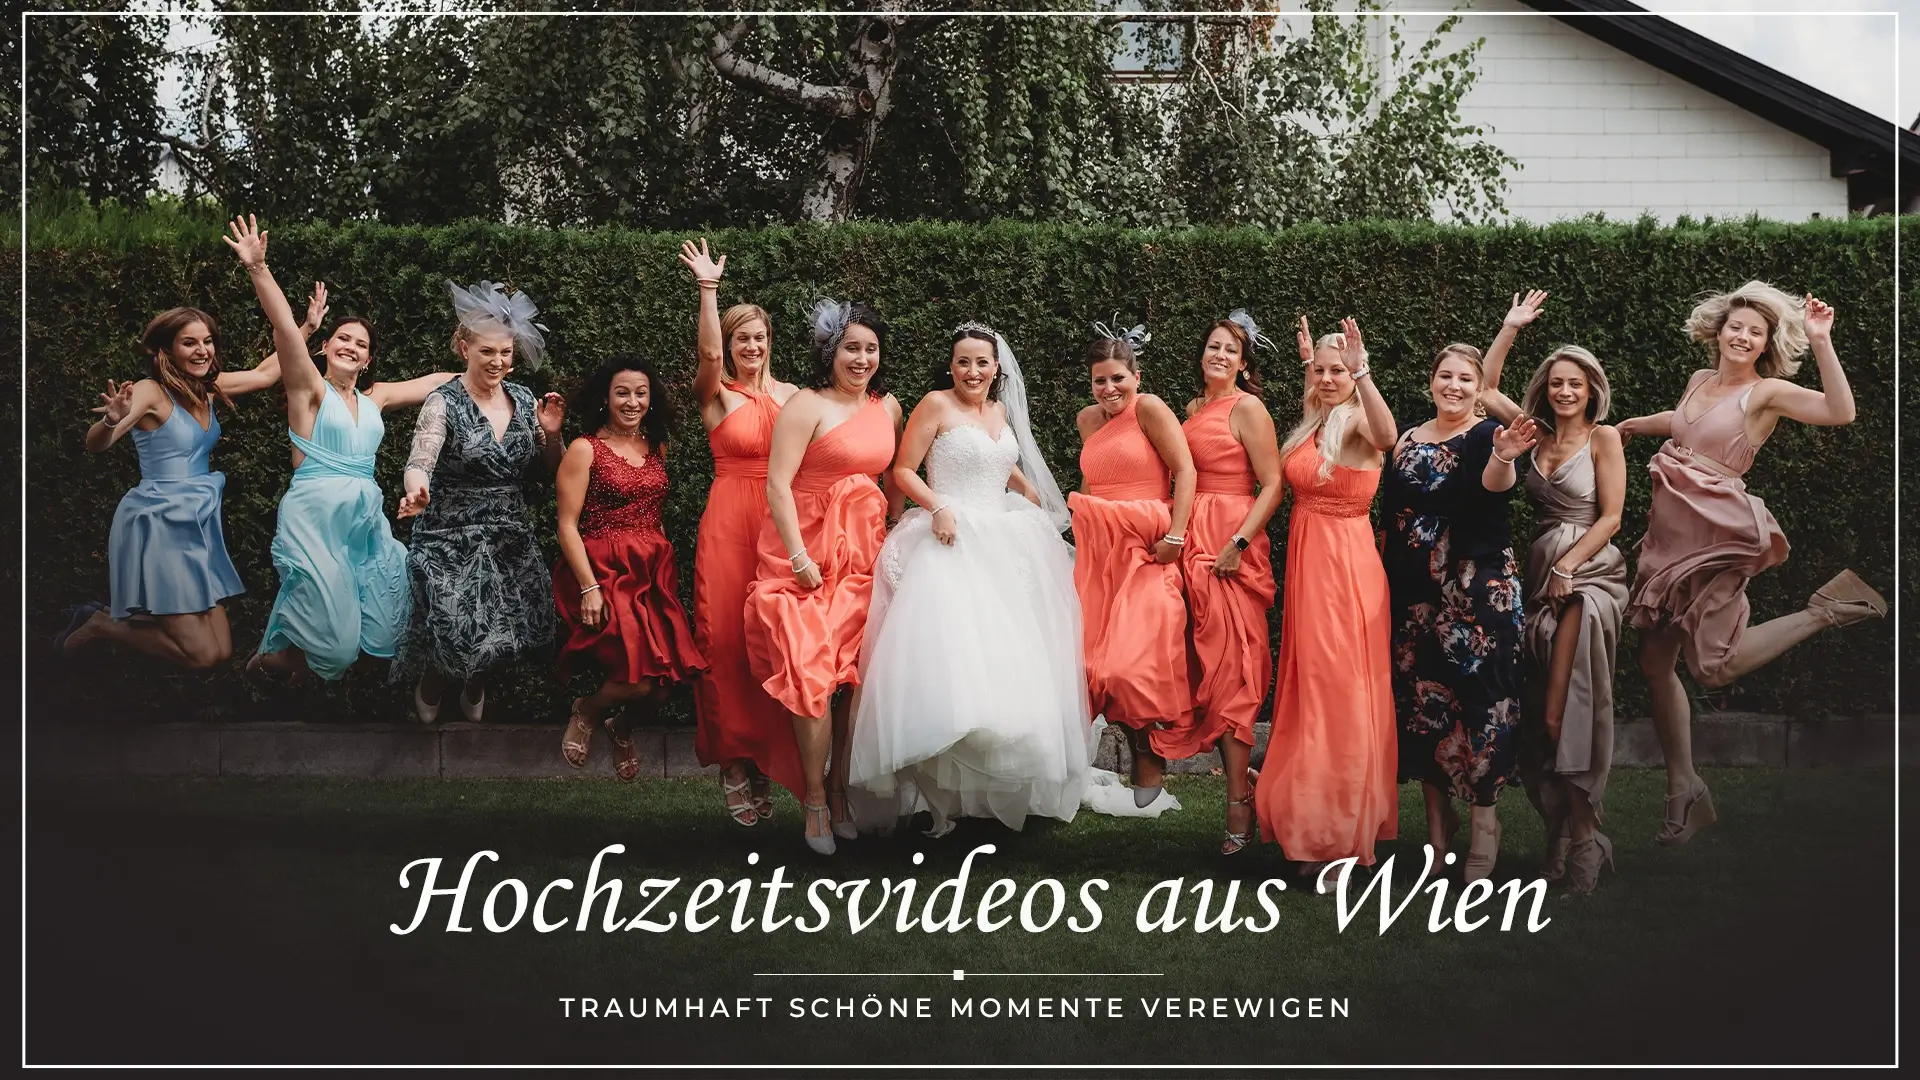 Hochzeitsvideos-aus-Wien-Weddingcrashers